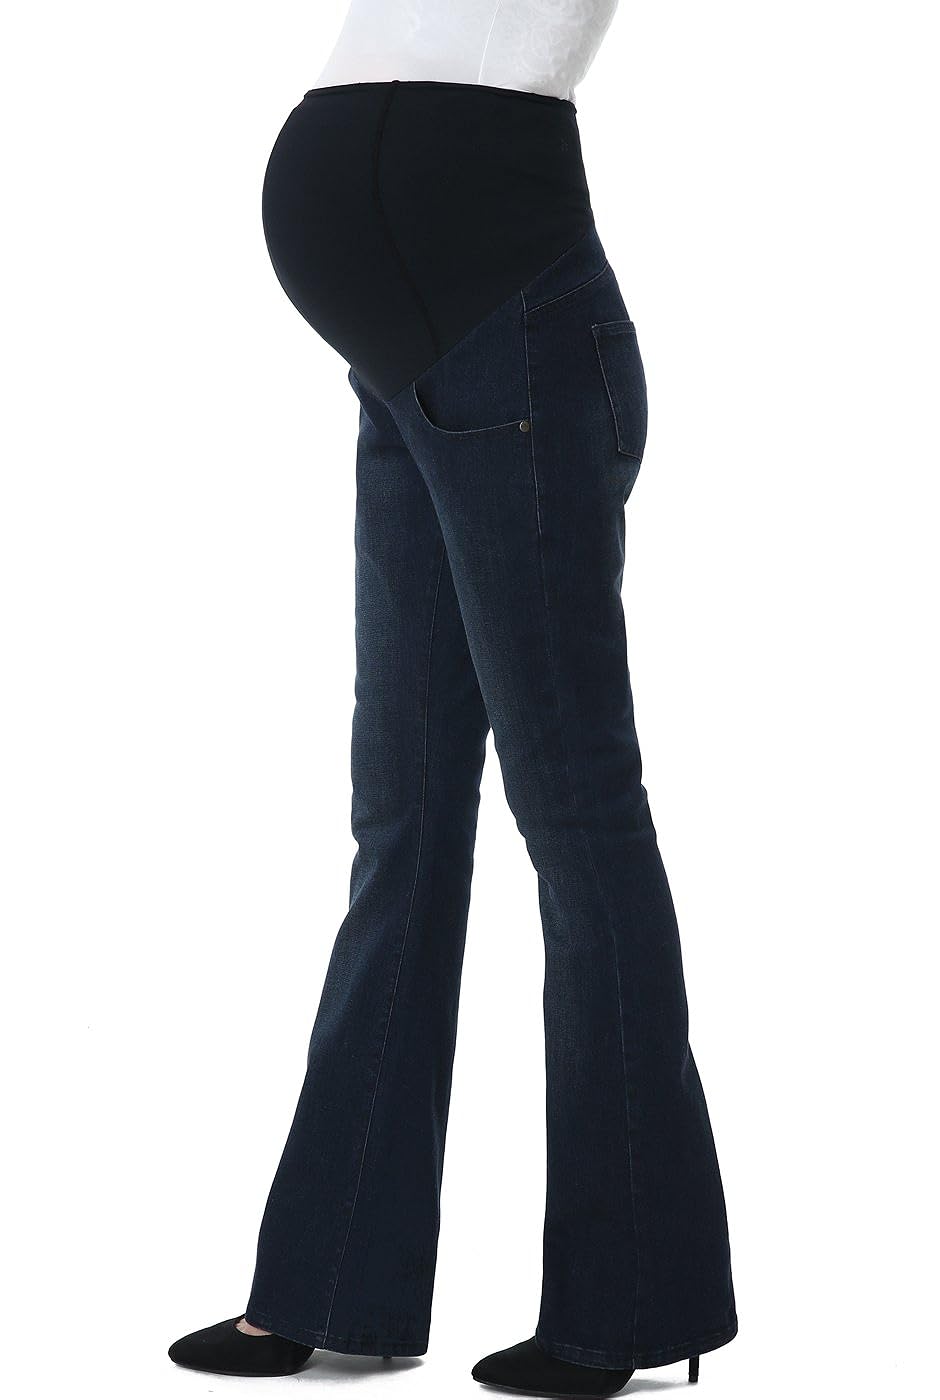 磊 Best Plus-Size Maternity Jeans in 2022 - Plus-Size Maternity Jeans ...